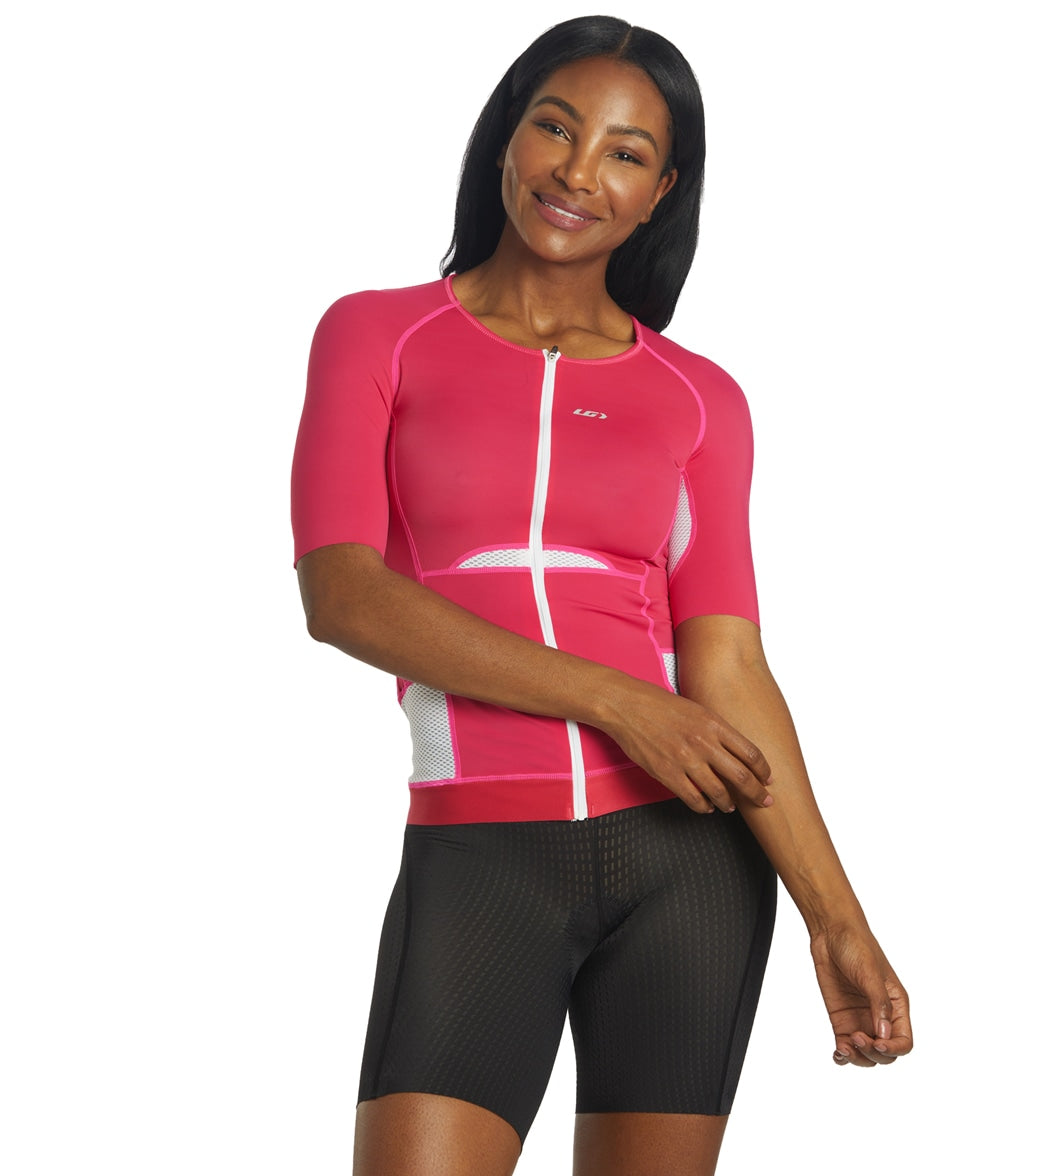 louis garneau womens cycling jersey